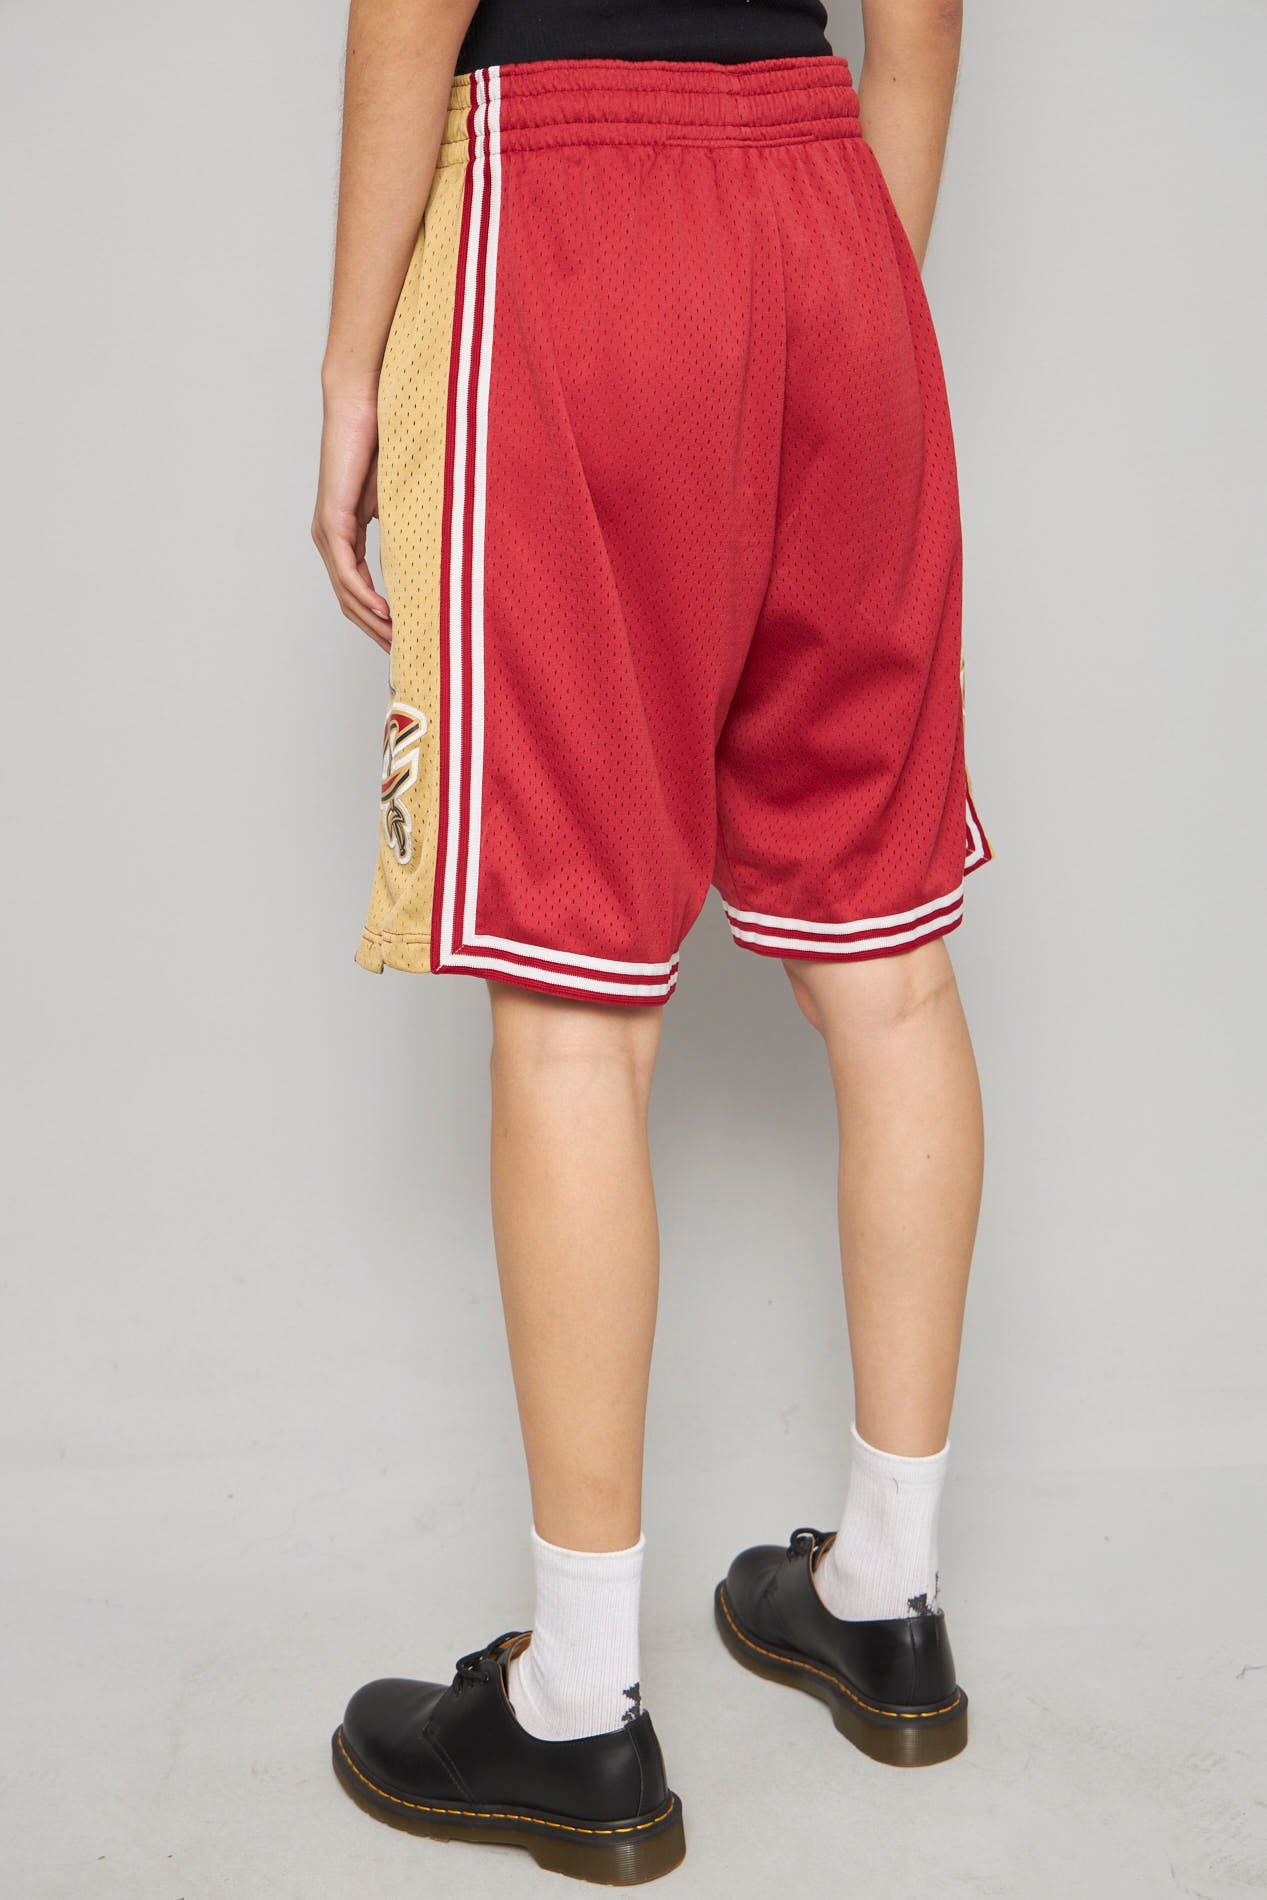 Shorts casual  rojo  adidas talla M 219